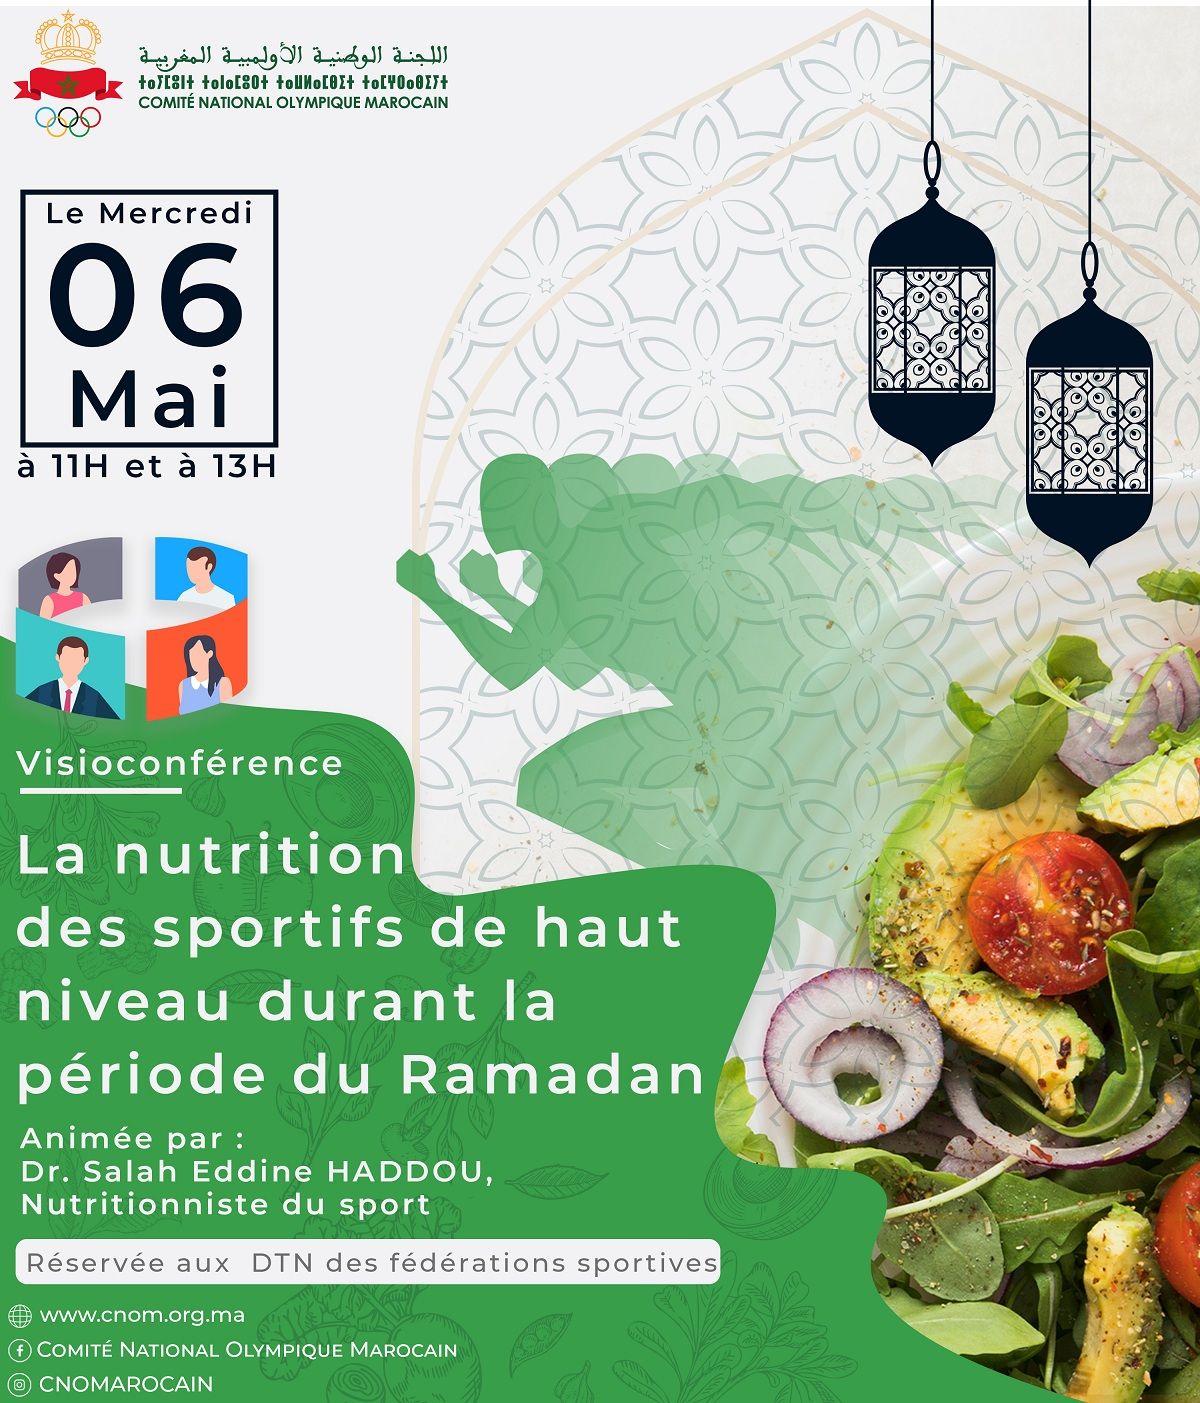 Visioconférence : La nutrition des sportifs durant le mois sacré de Ramadan